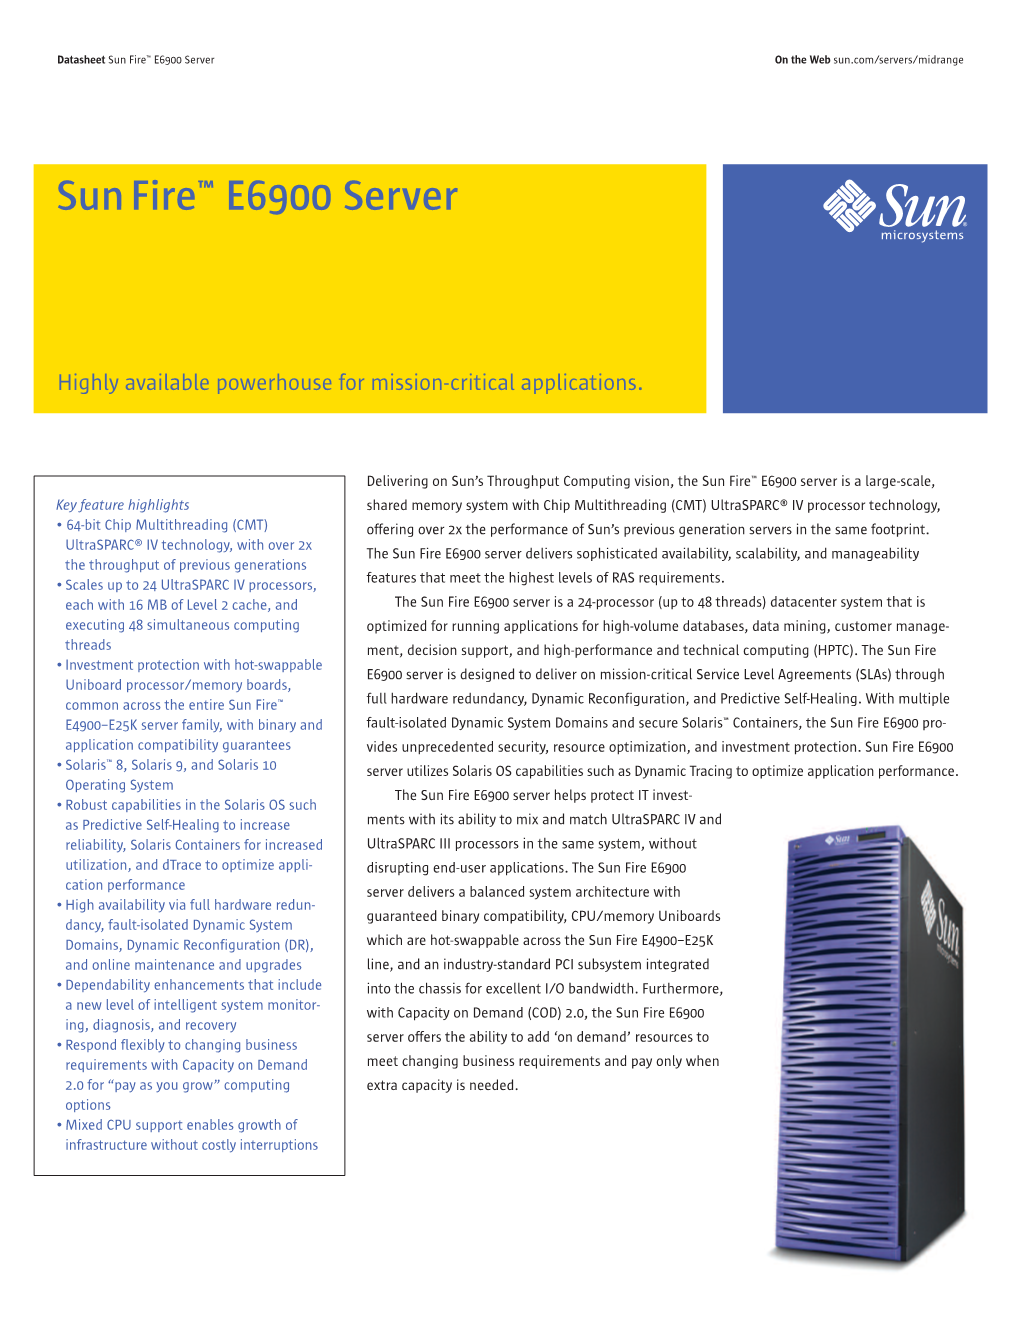 Sun Fire E6900 Server Datasheet